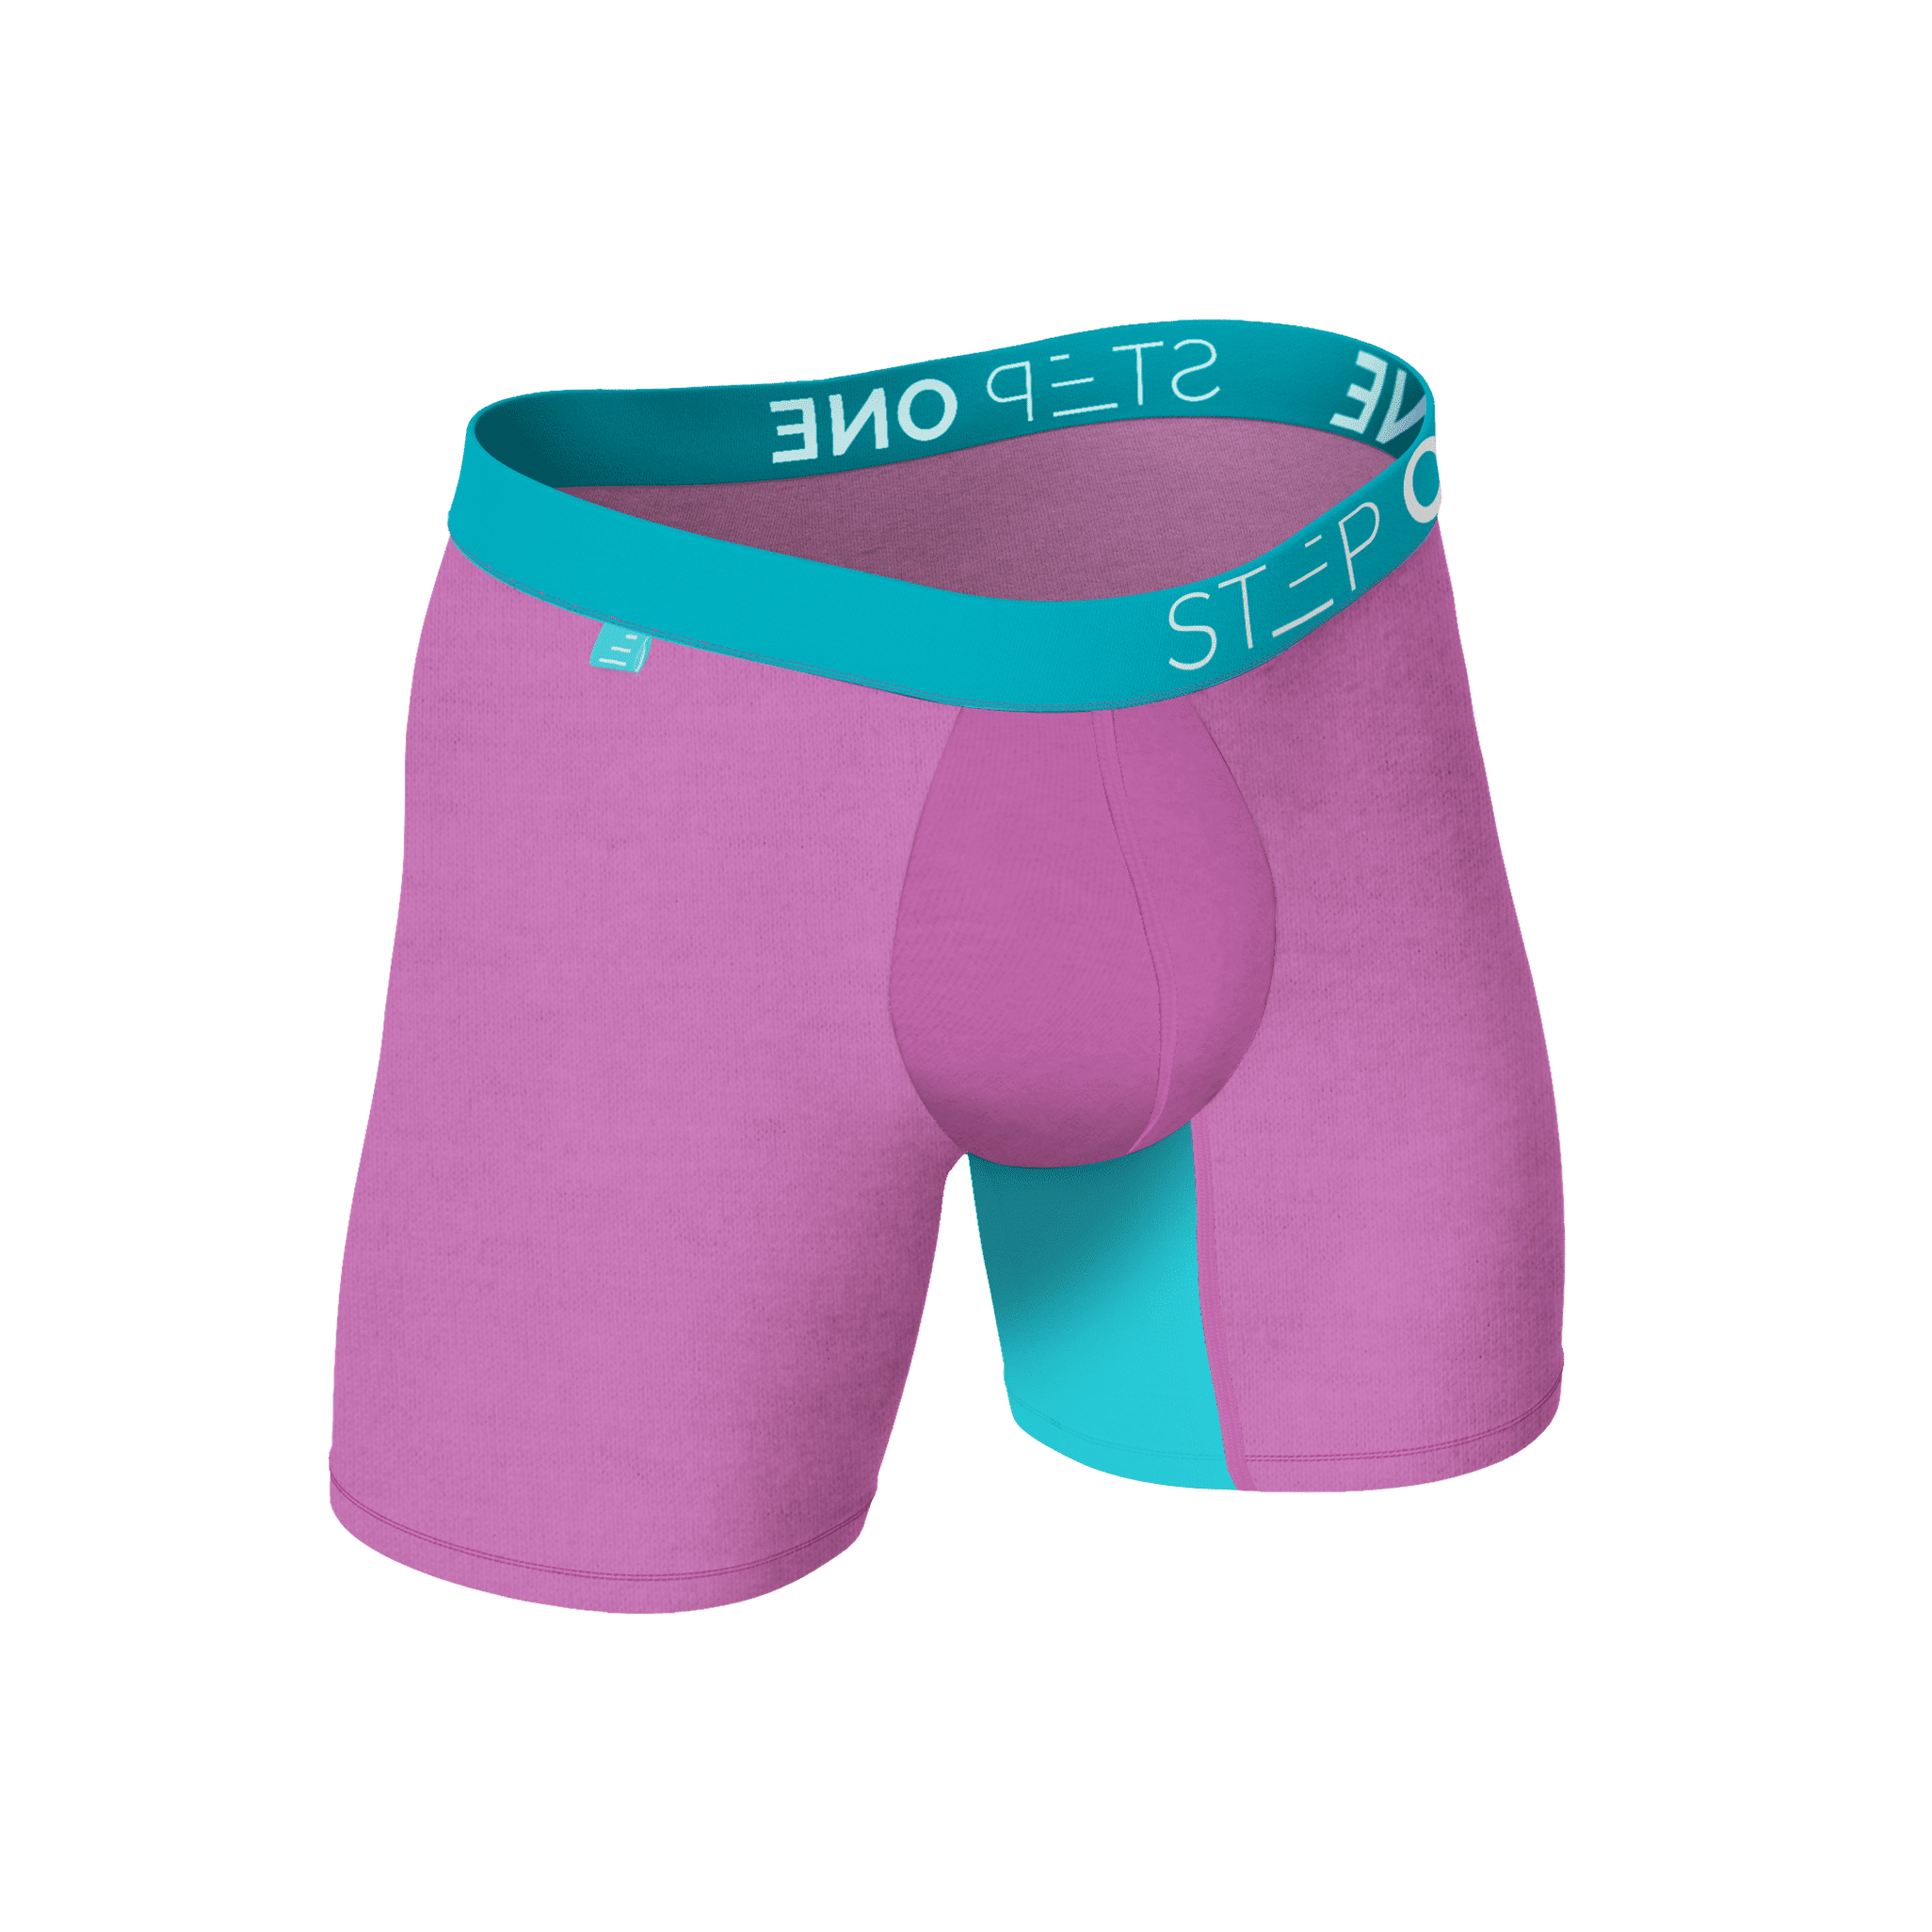 Mens Bamboo Underwear Online in Australia